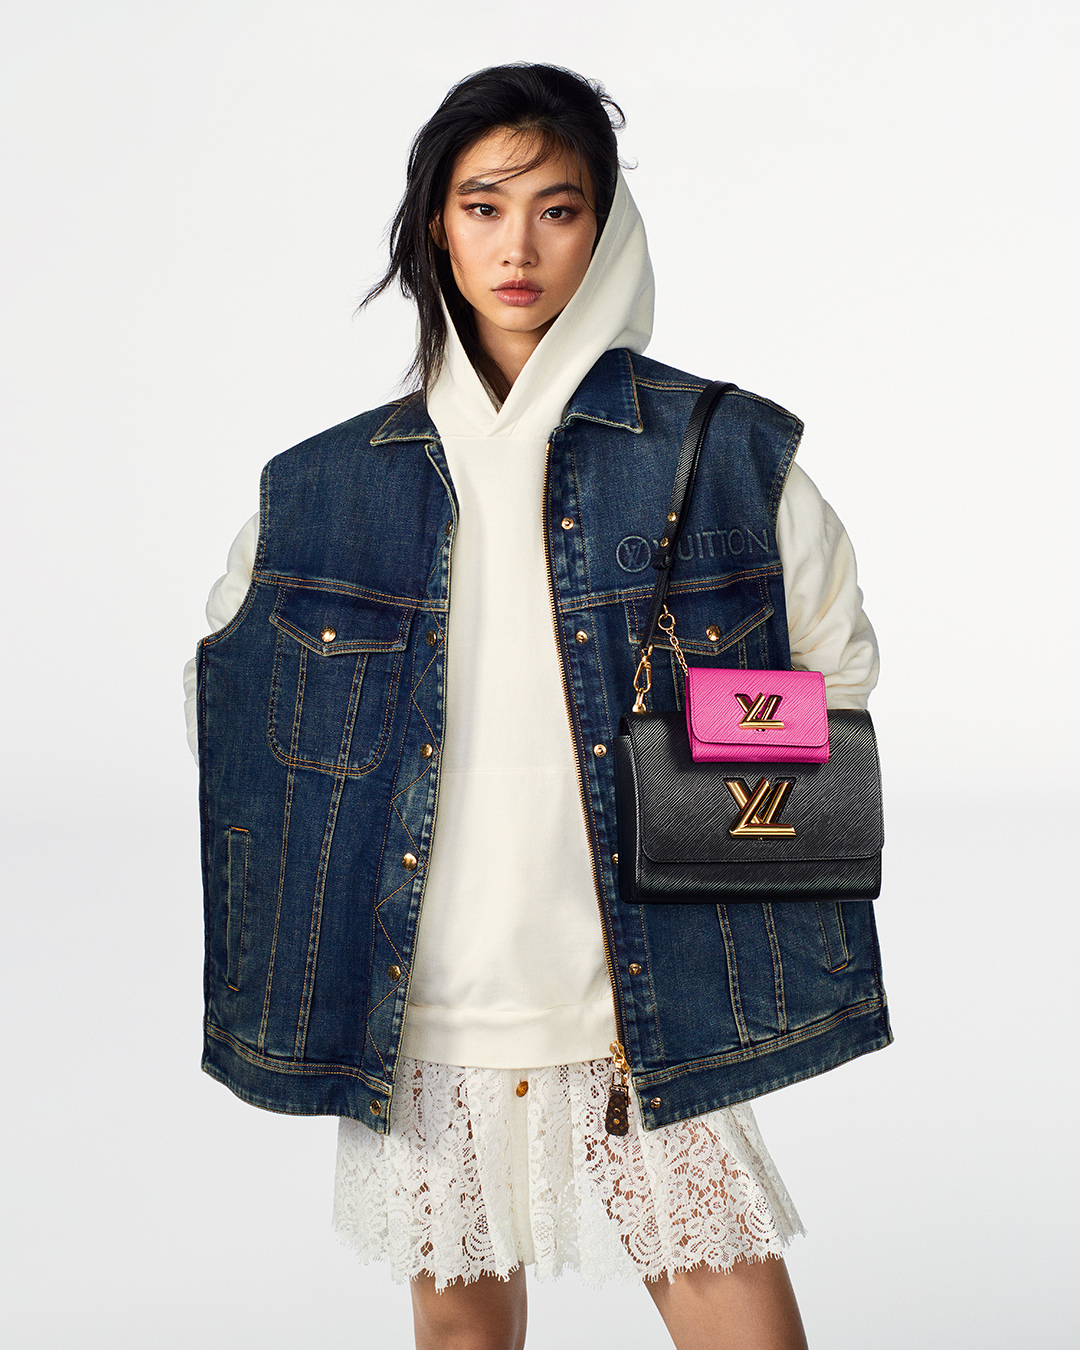 Louis Vuittons New Global Ambassador Squid Game Star HoYeon Jung  WWD